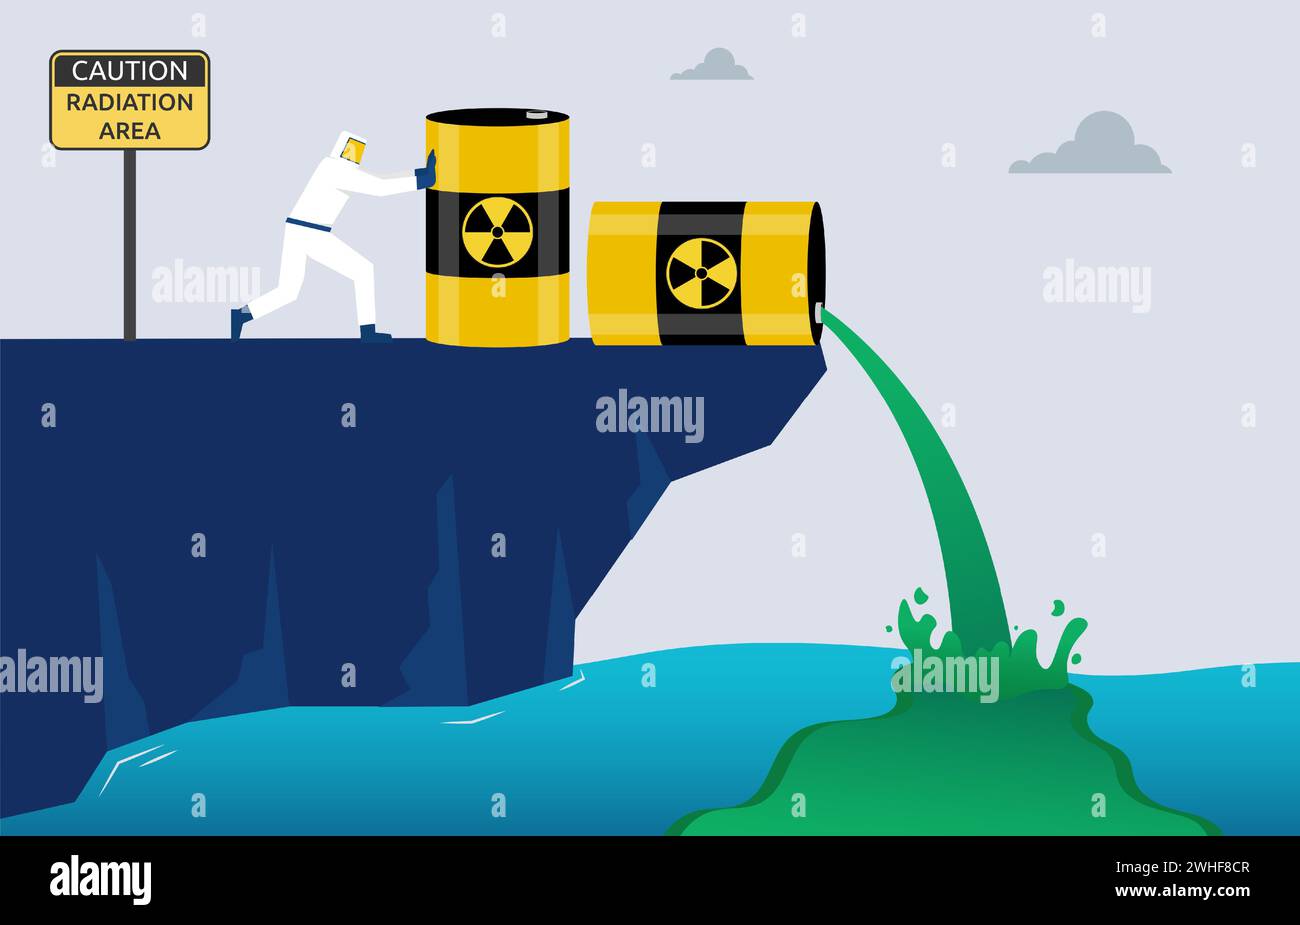 Les travailleurs déversent des déchets radioactifs dans la mer, pollution dangereuse des eaux usées, préoccupation mondiale pour la santé humaine et environnementale, contami matériel nocif Illustration de Vecteur